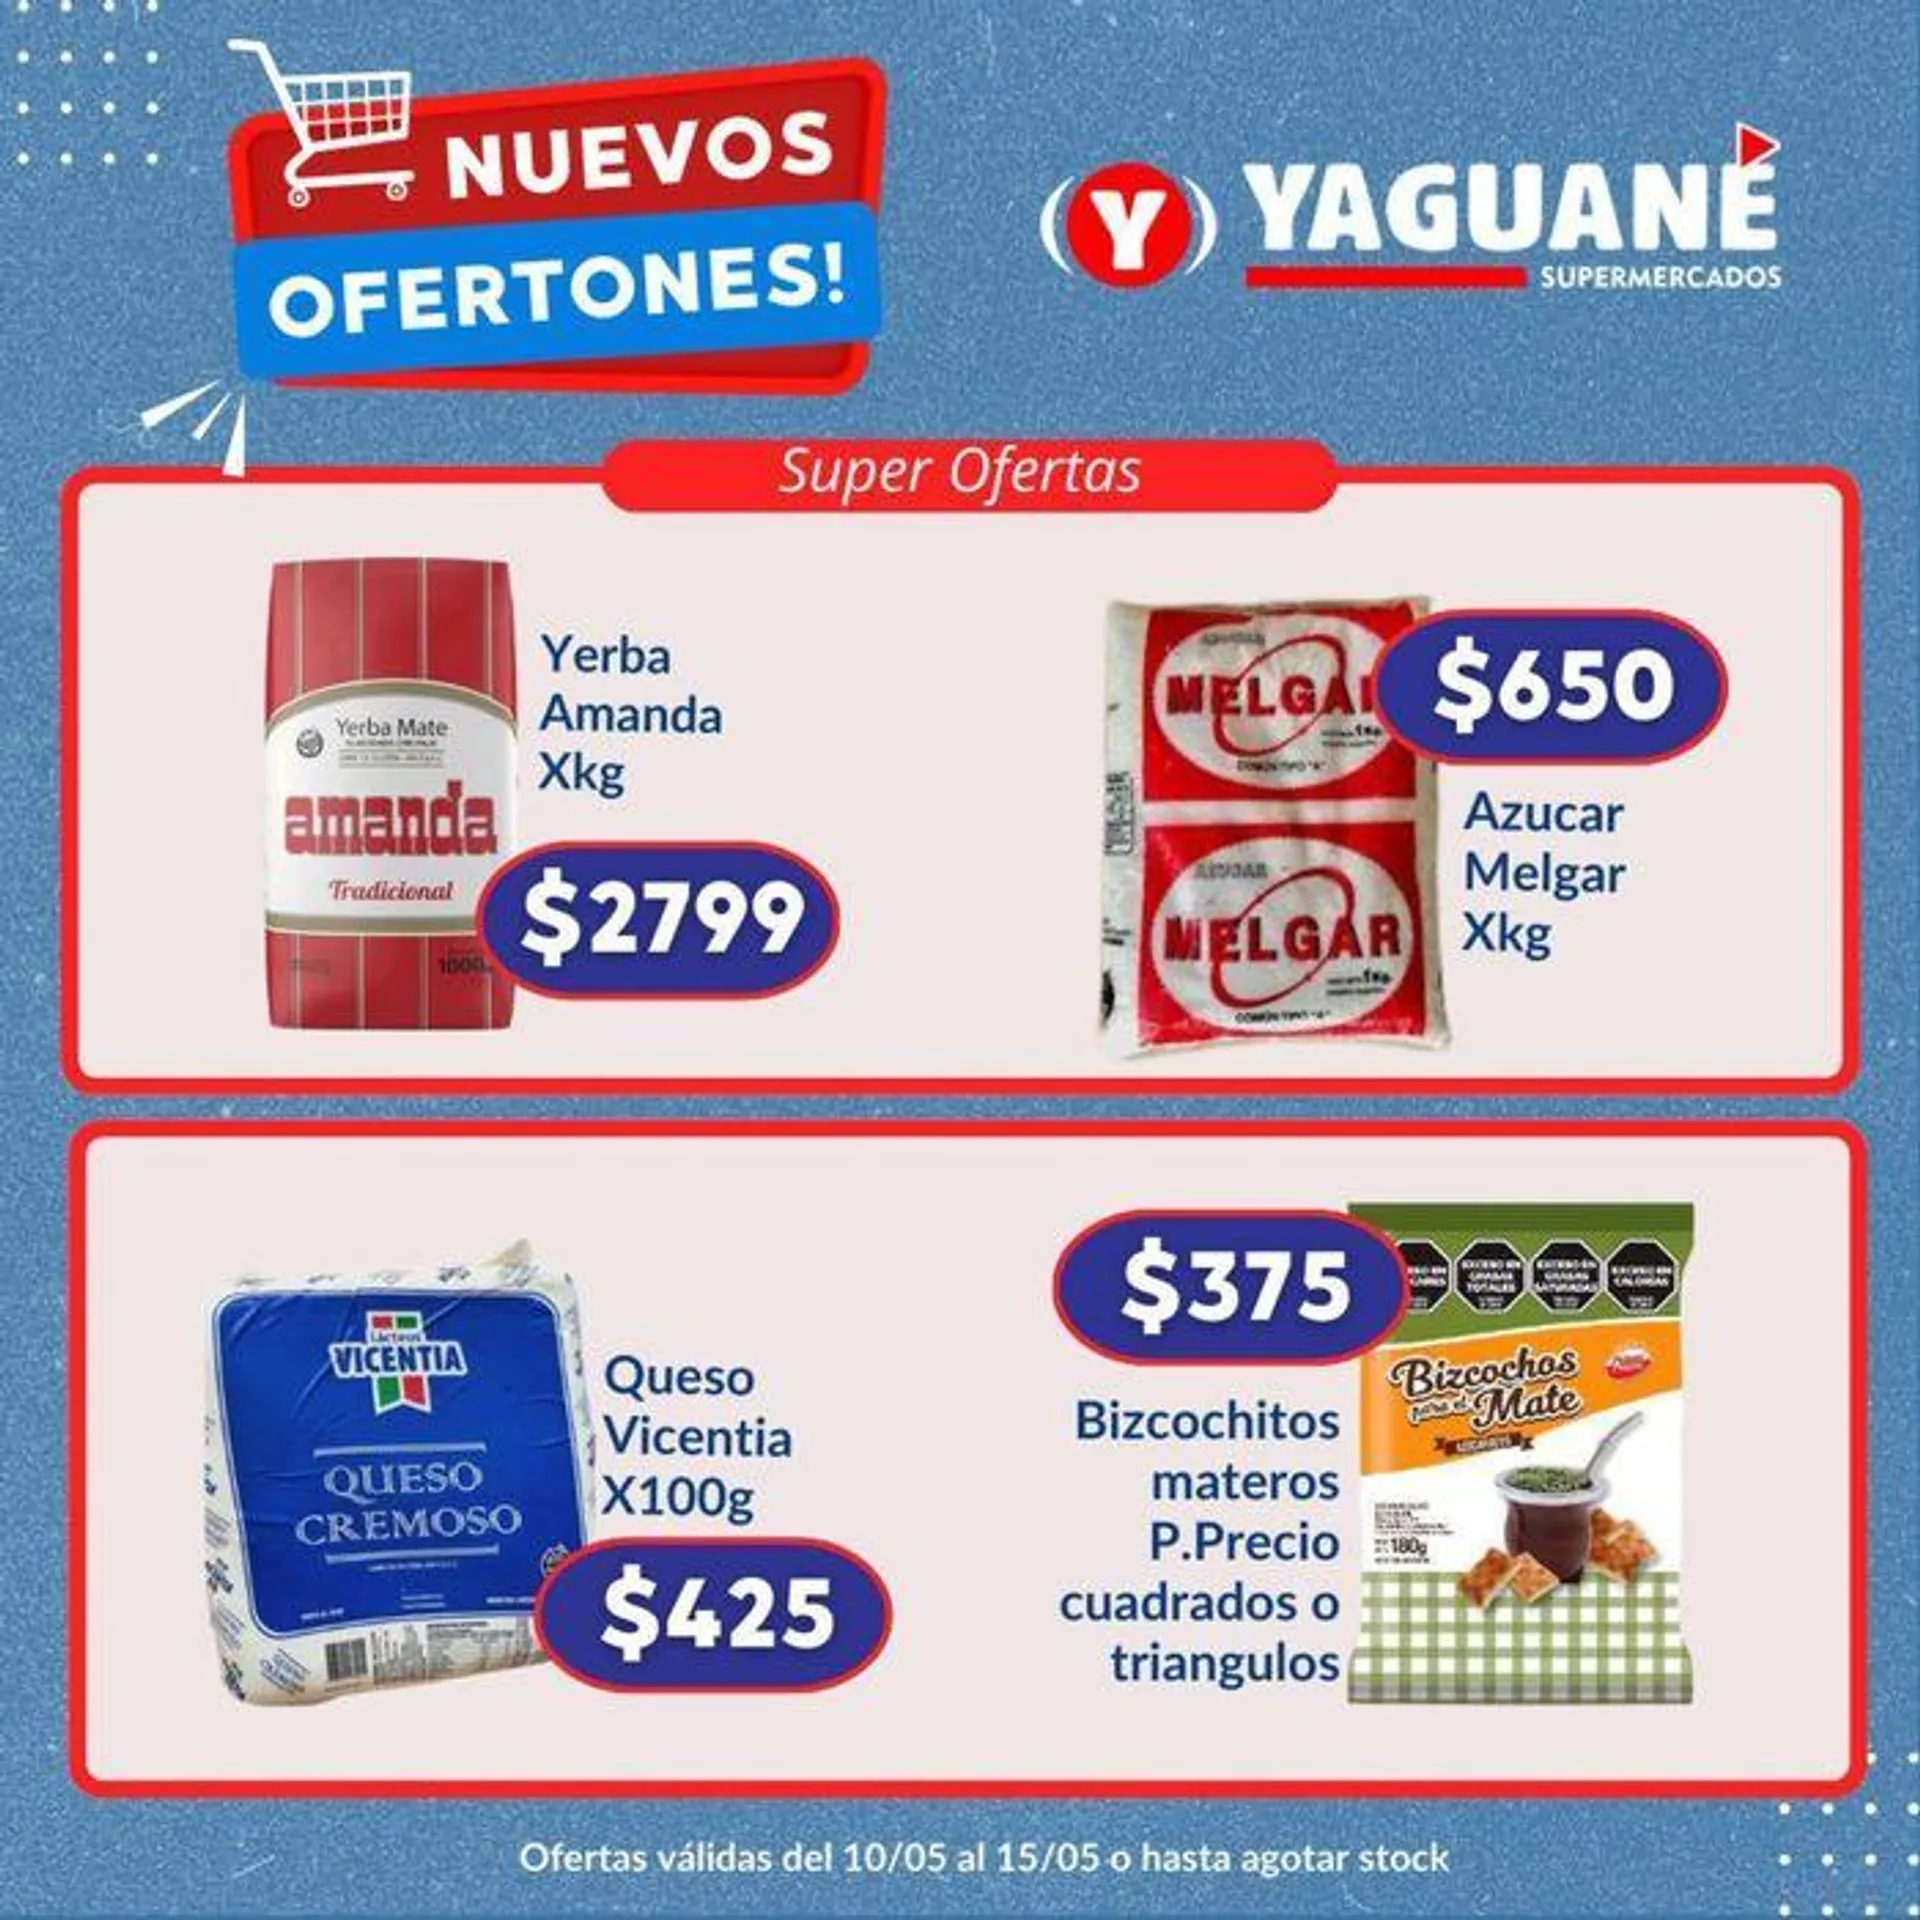 Nuevos Ofertones Yaguane Supermercados - 1